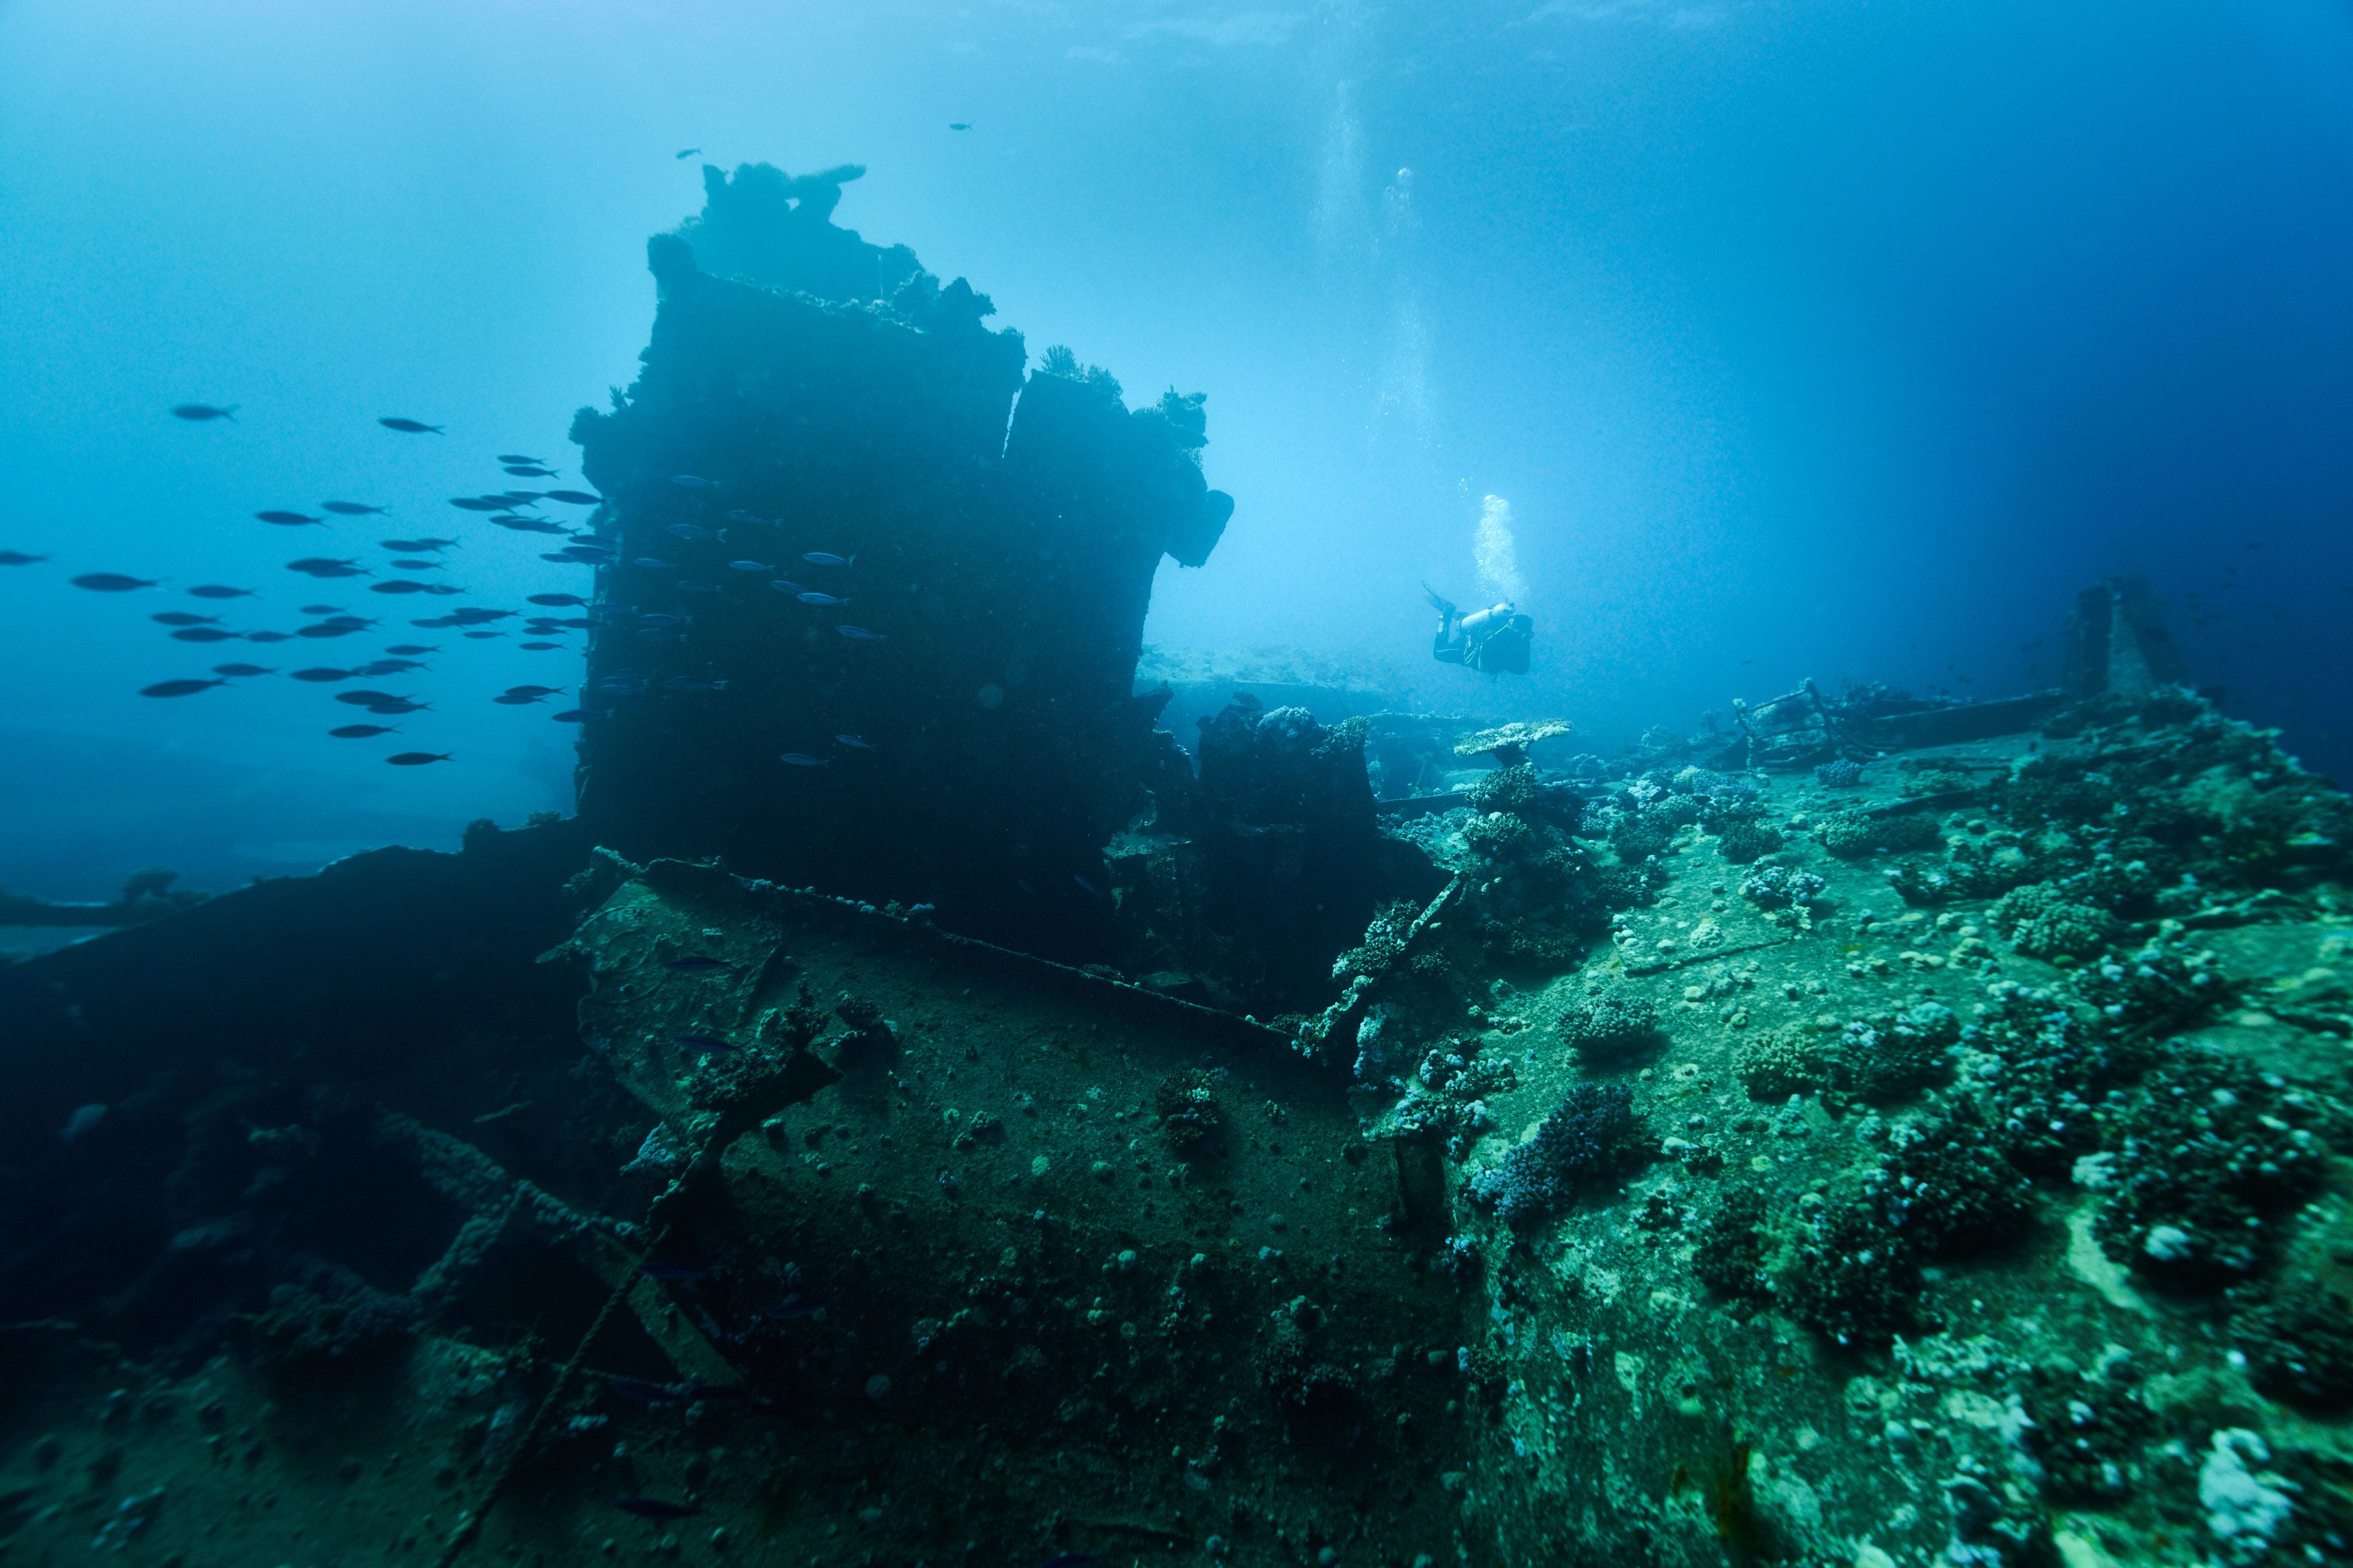 затонувший корабль, подводное фото, рекдайвинг, Павел Карчевский